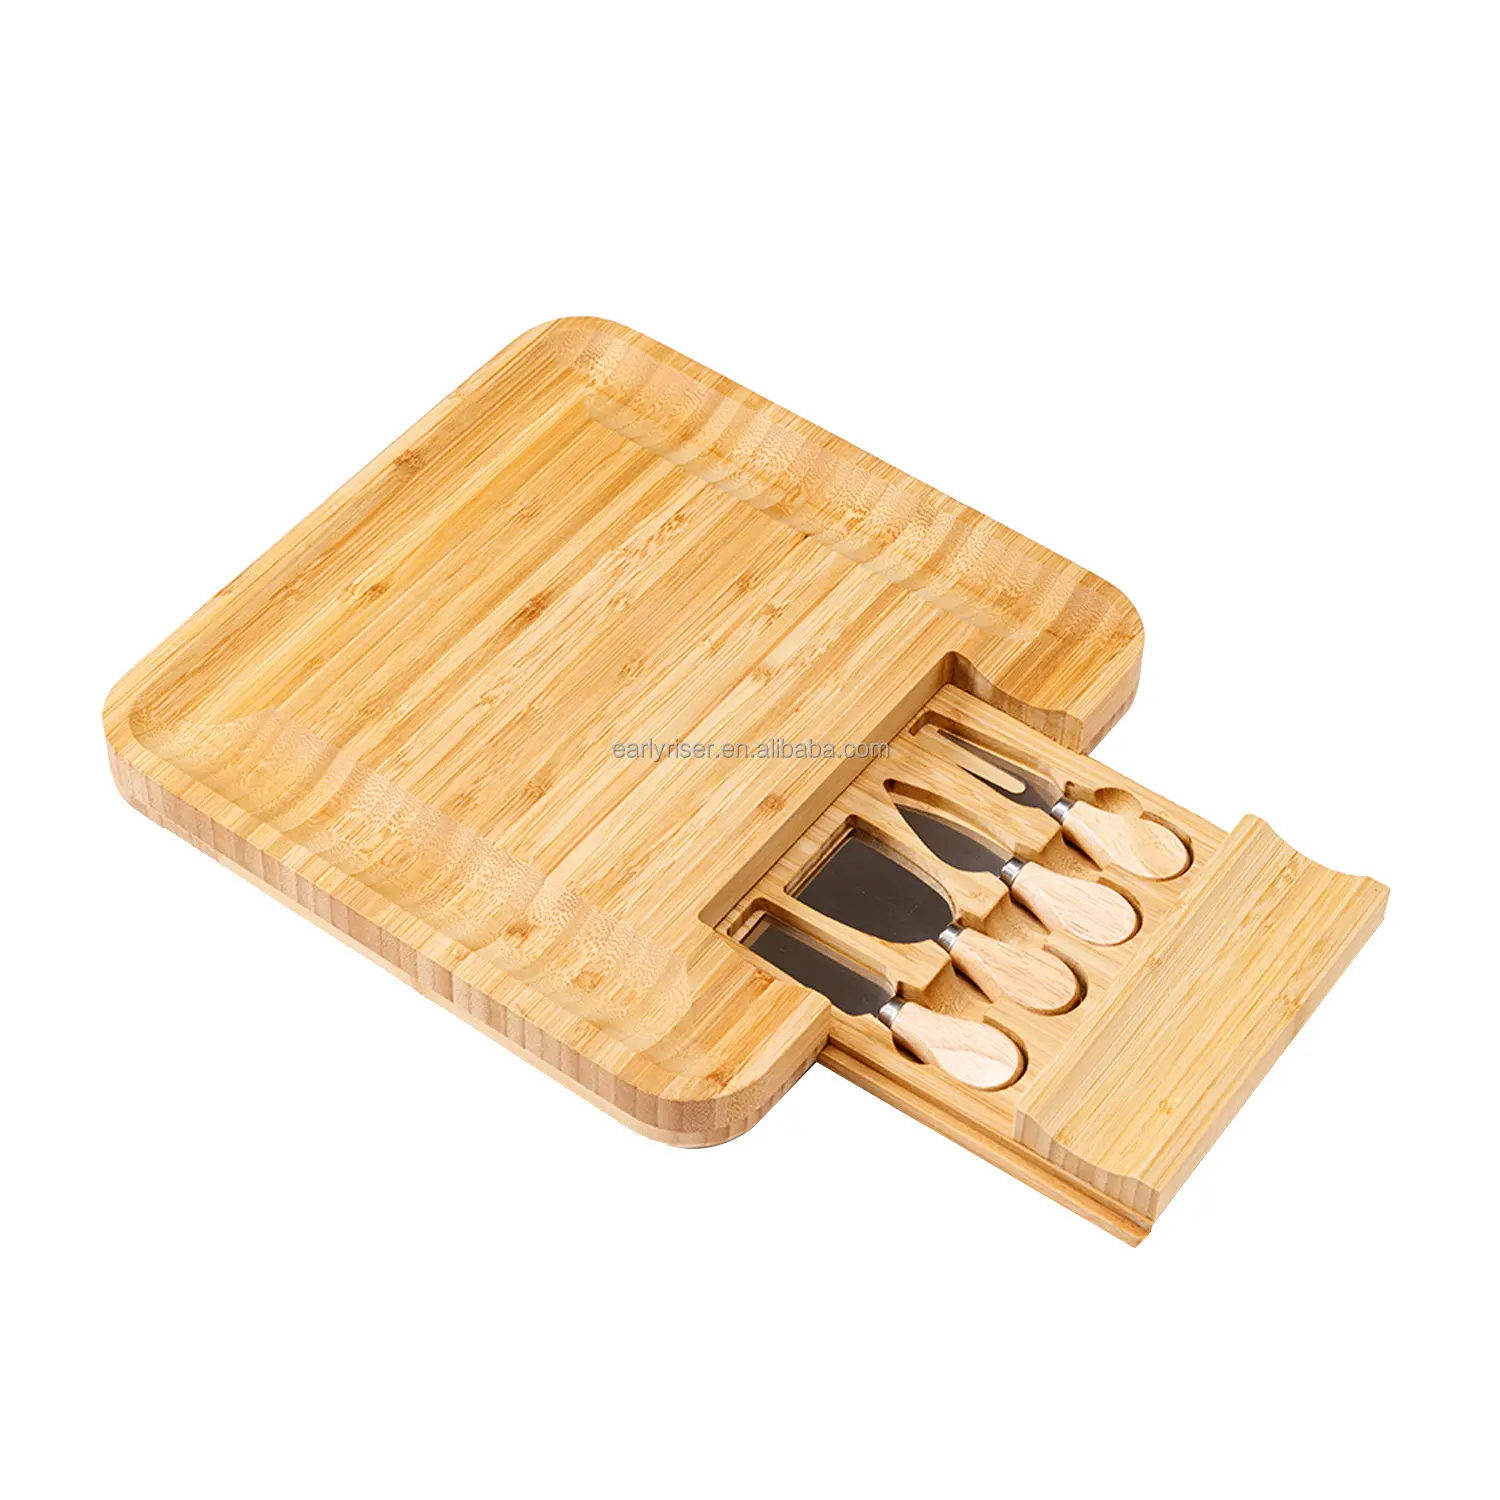 Gizli çekmeceler, peynir tahtası ve bıçak depolama rafları ile özelleştirilmiş kalın ahşap ve bambu kesme tahtaları